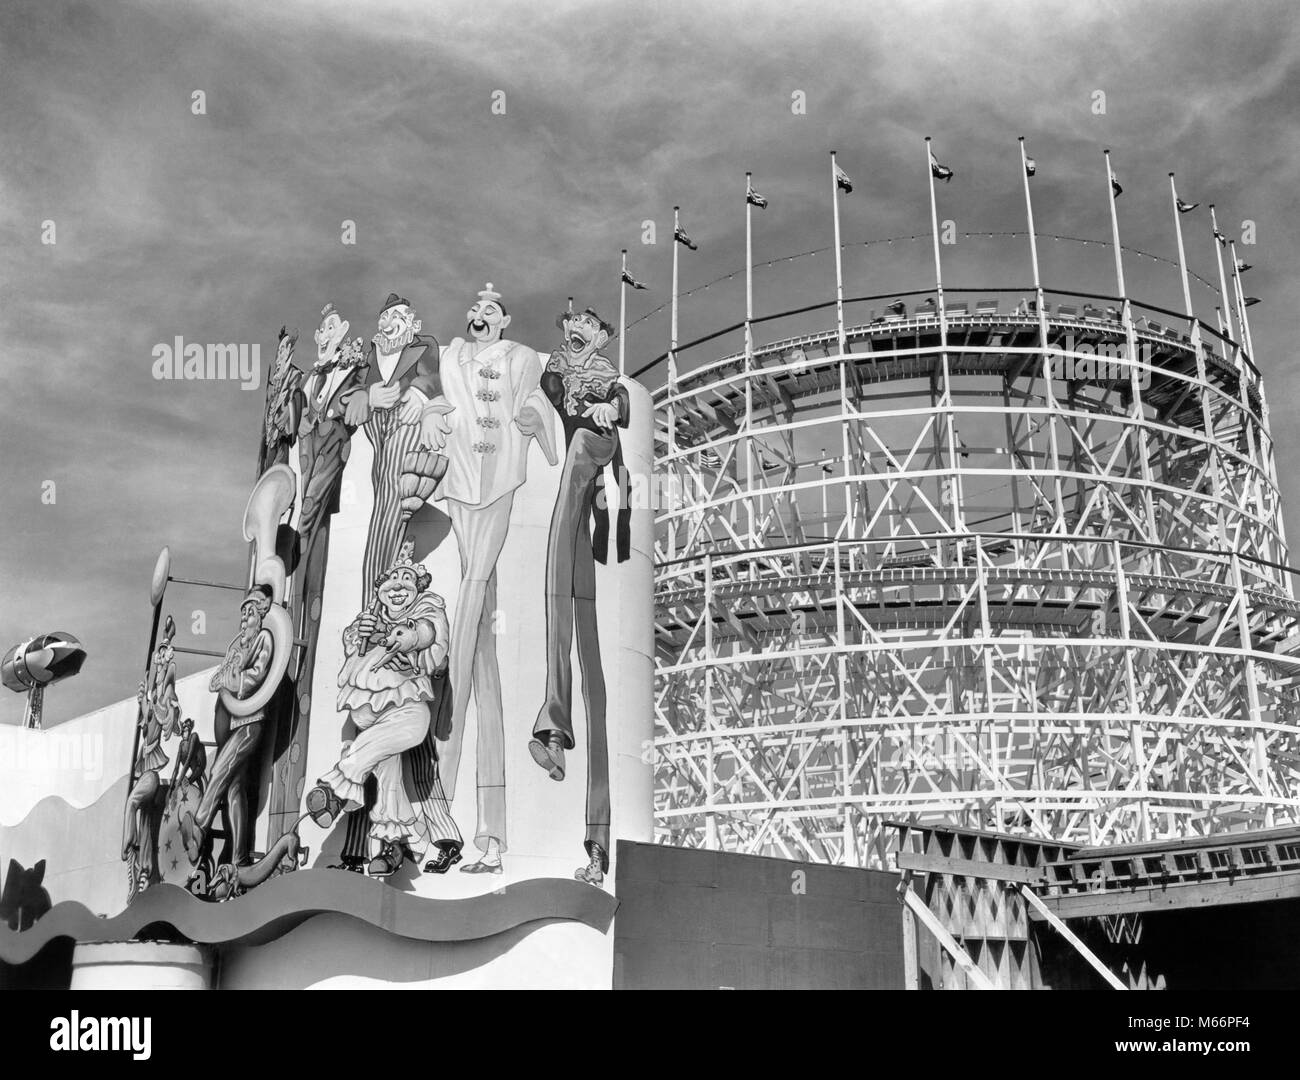 1930 La feria mundial de 1939 PAYASO MURAL Y Roller Coaster en el área de entretenimiento de la ciudad de Nueva York NY ESTADOS UNIDOS - r1396 PAL001 HARS B&W BLANCO Y NEGRO CORONA PARK EXPO EXPOSICIÓN Flushing Meadow MURAL ANTICUADO Roller Coaster Foto de stock